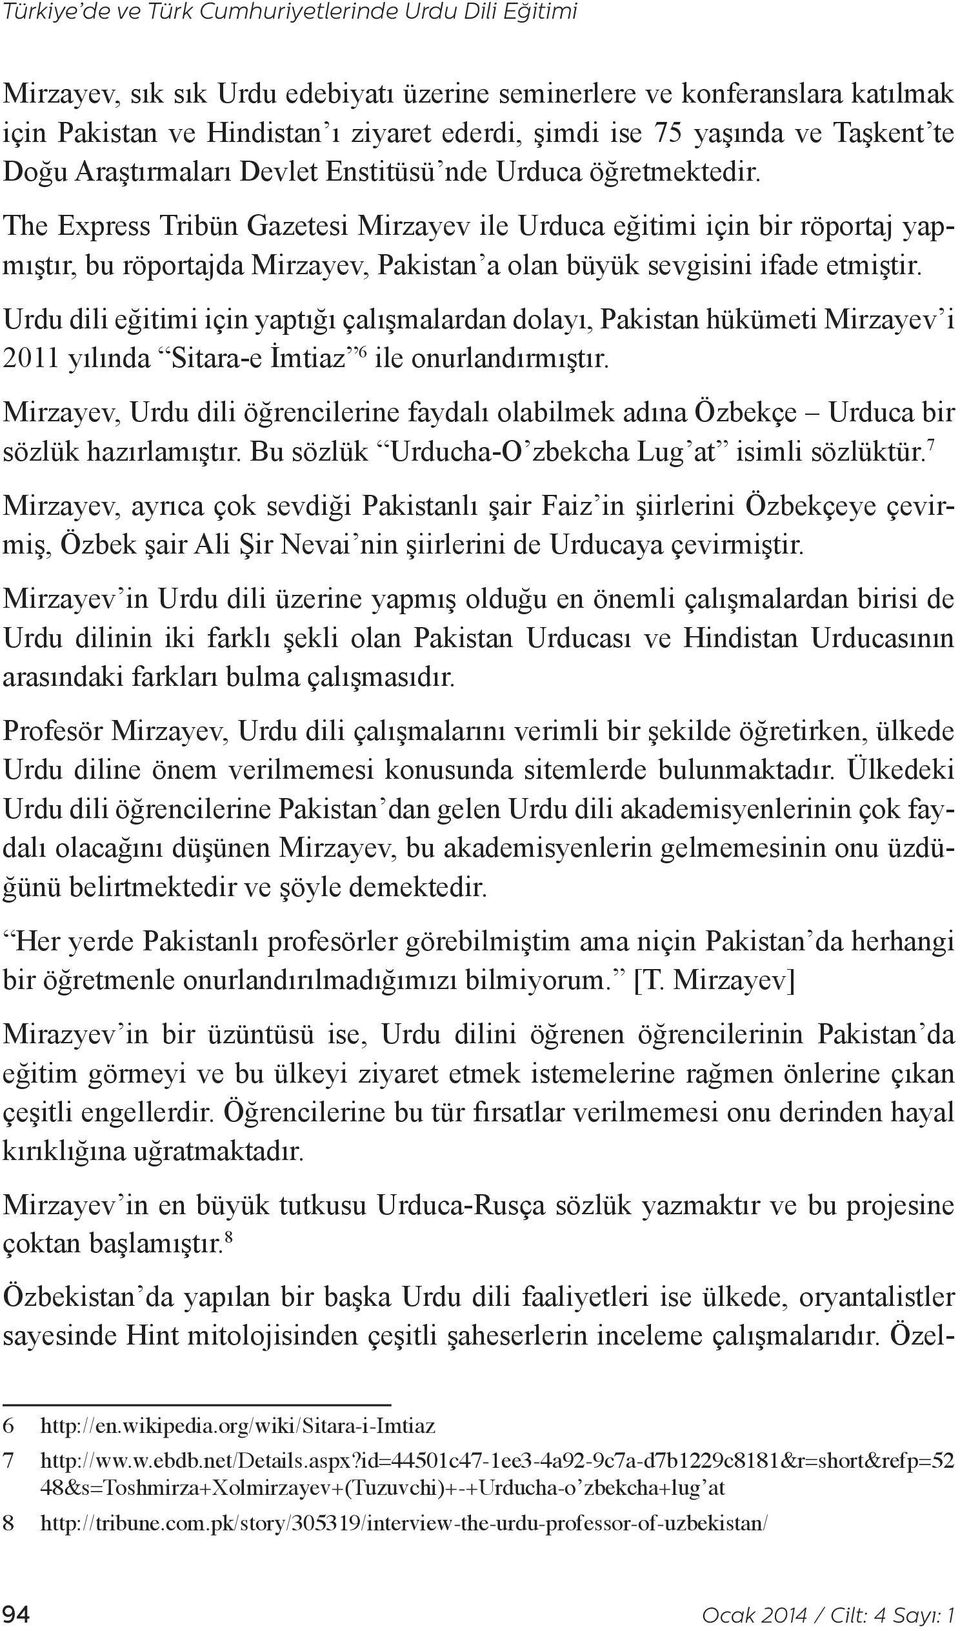 The Express Tribün Gazetesi Mirzayev ile Urduca eğitimi için bir röportaj yapmıştır, bu röportajda Mirzayev, Pakistan a olan büyük sevgisini ifade etmiştir.